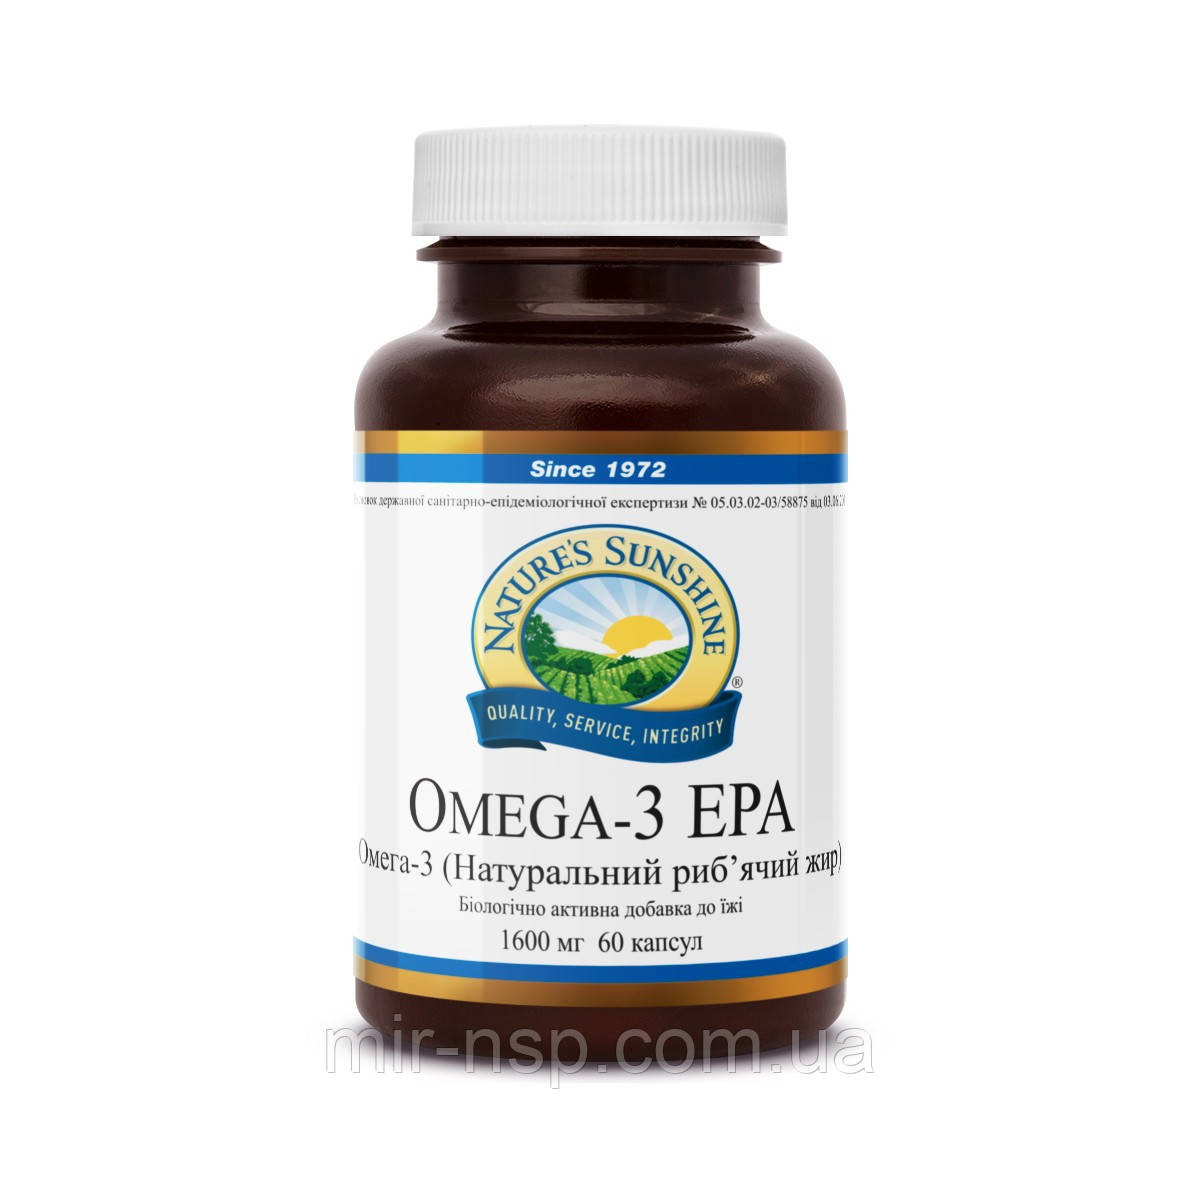 Омега 3 EPA, омега 3 - жирні кислоти, вагітність-Омега 3, риб'ячий жир у капсулах НСП